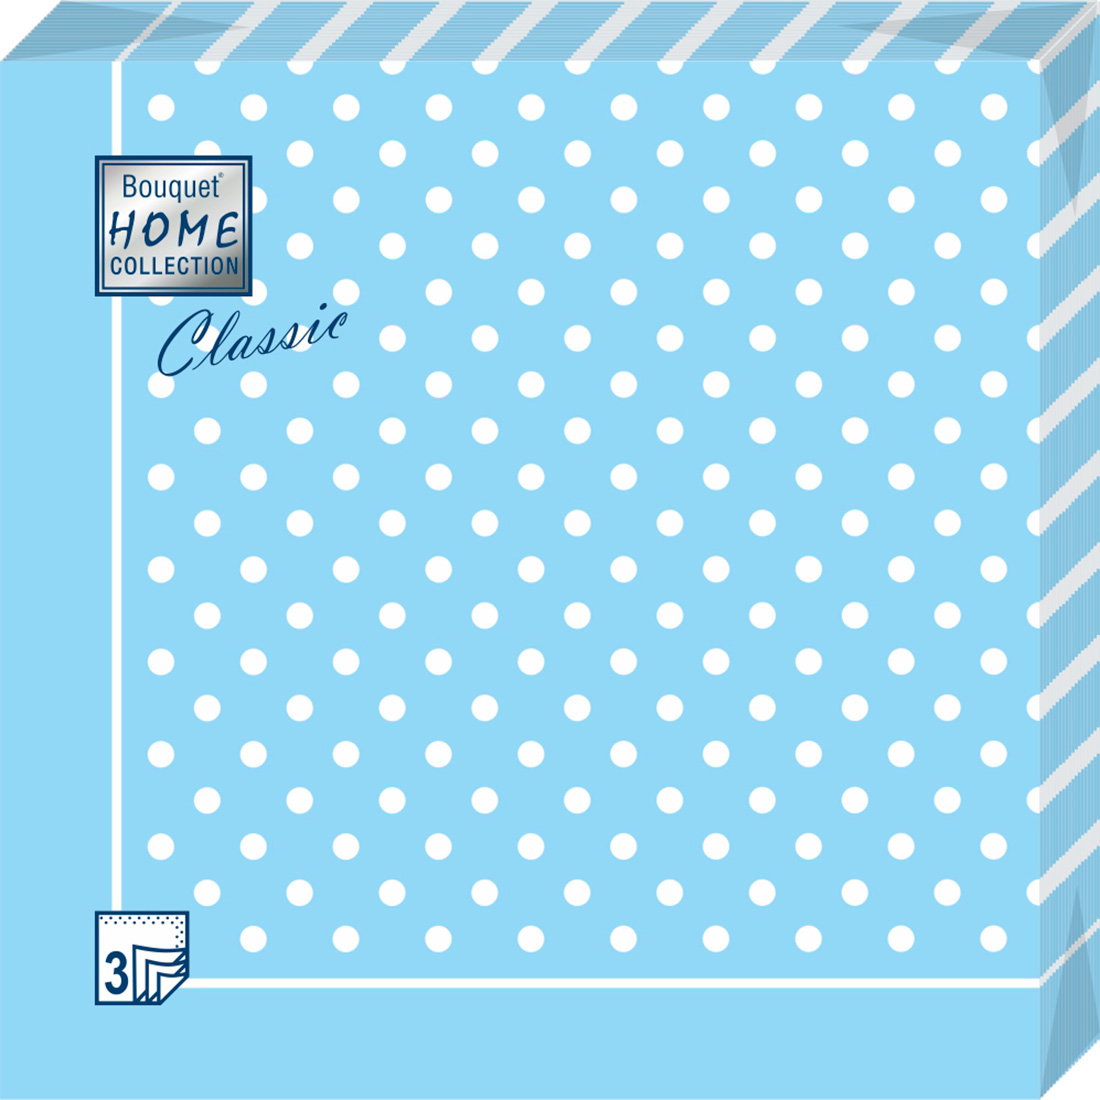 Салфетки Home collect classic бумажные голубая скатерть в горошек 3сл 20л - фото 1